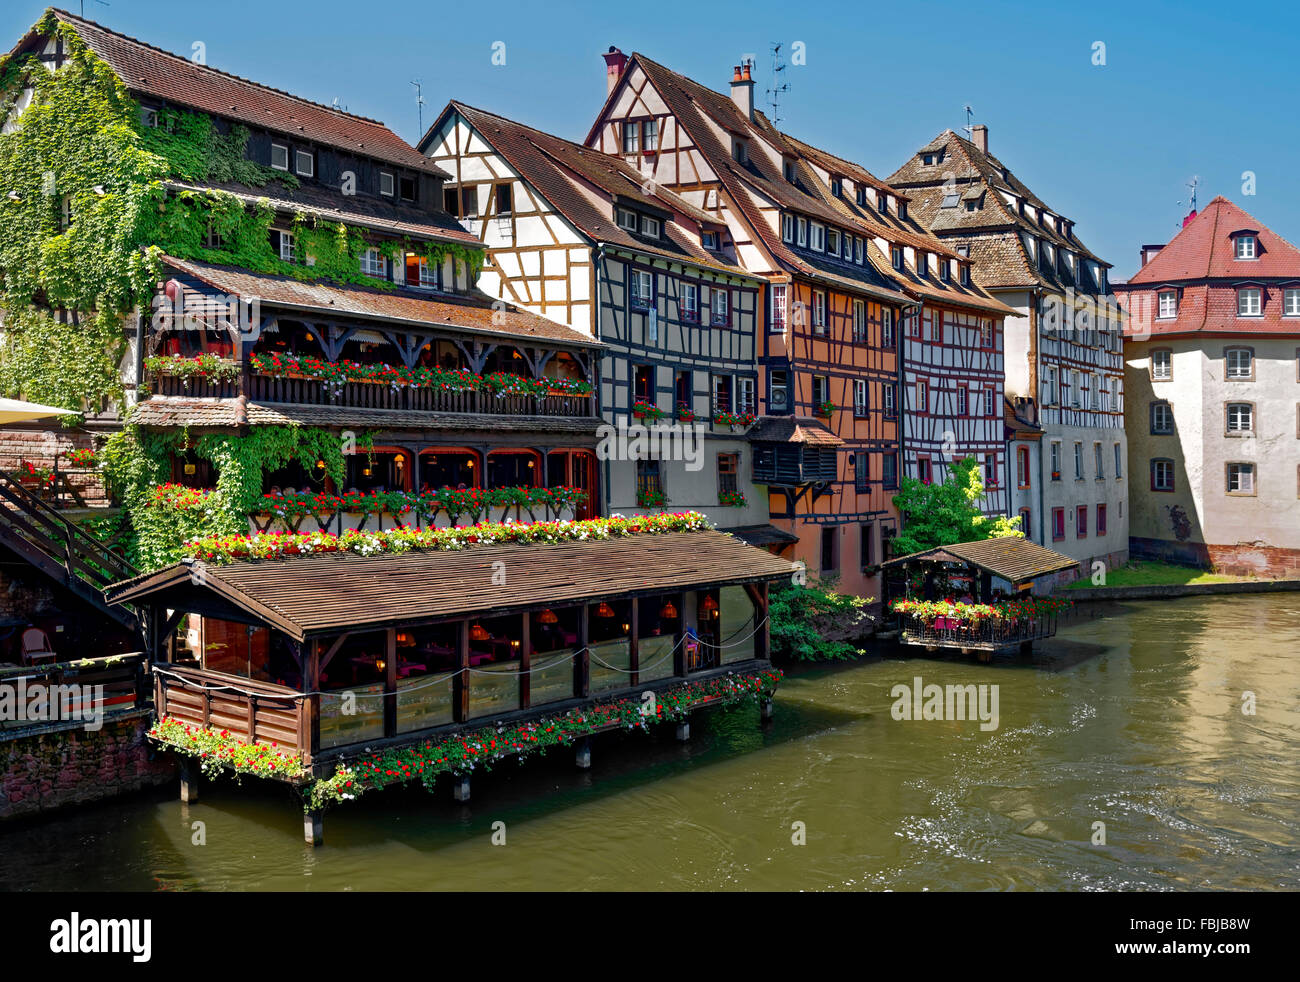 Historical restaurant in the tanner's quarter, Strasbourg, France Stock Photo